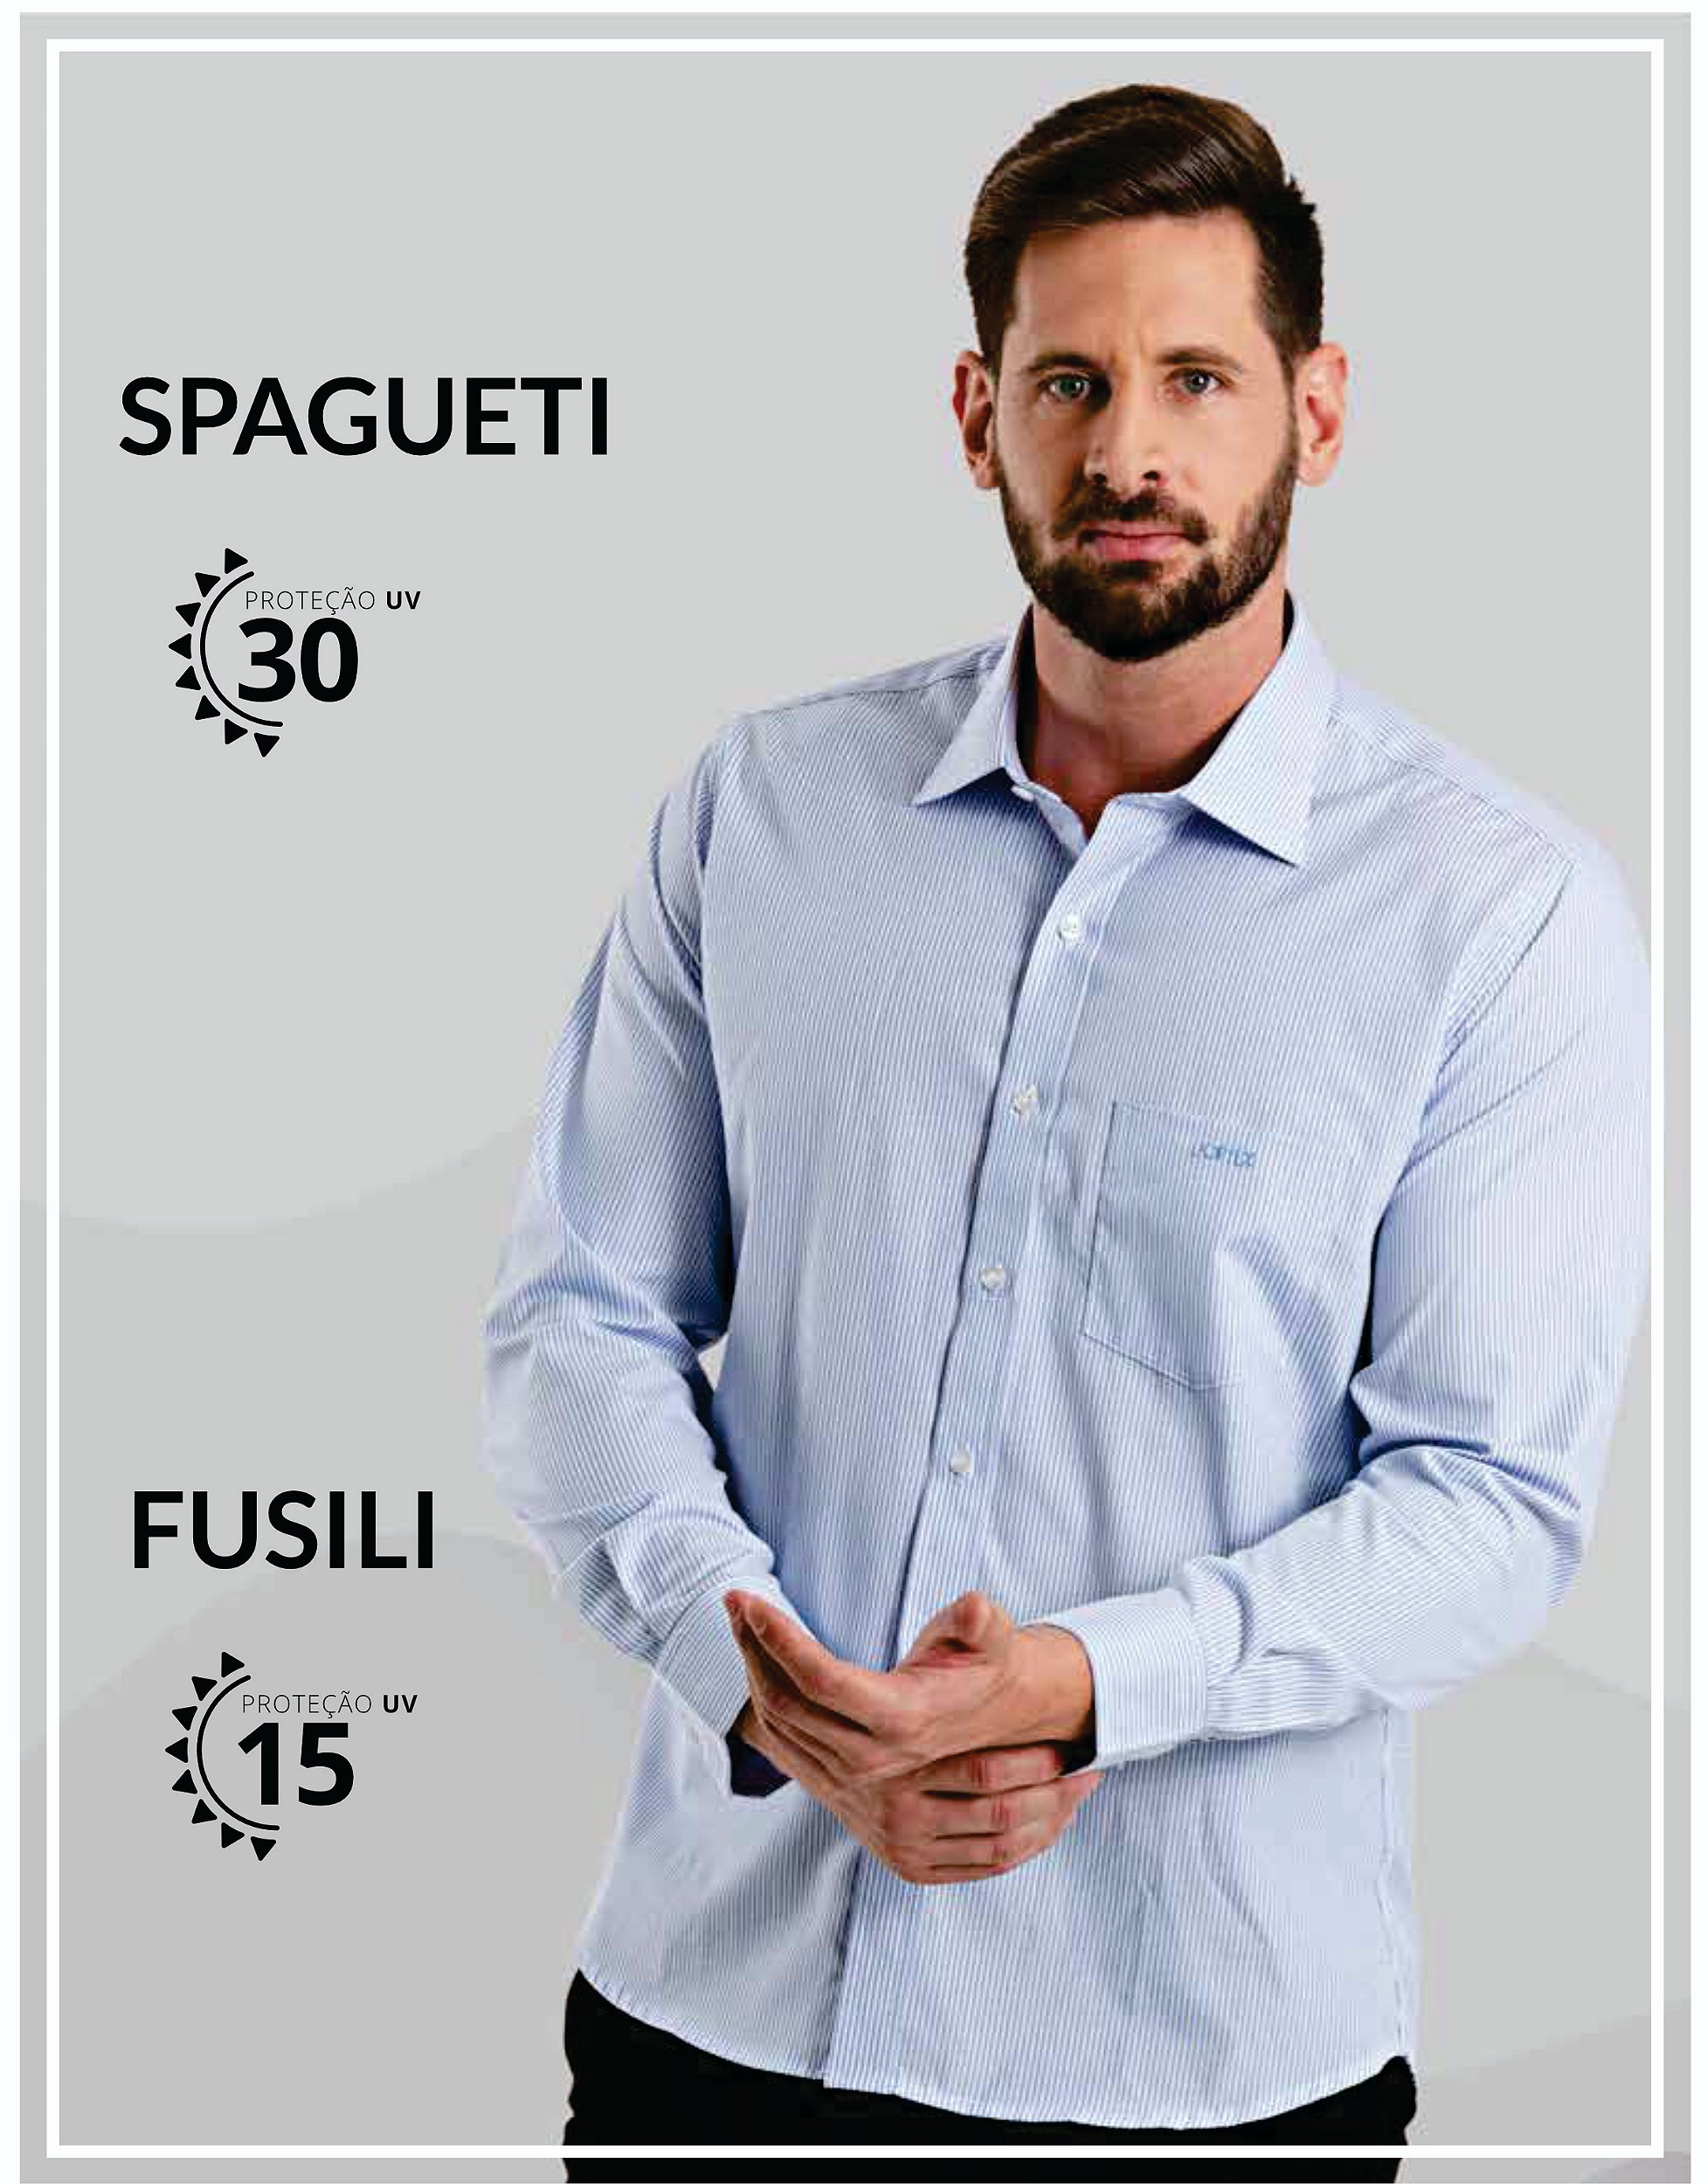 Camisa Social Spaguetti e Fusili - AGAPE WORK - UNIFORMES SOCIAIS,  PROFISSIONAIS,PROMOCIONAIS E DESENVOLVIMENTO DE PROJETOS PERSONALIZADOS.